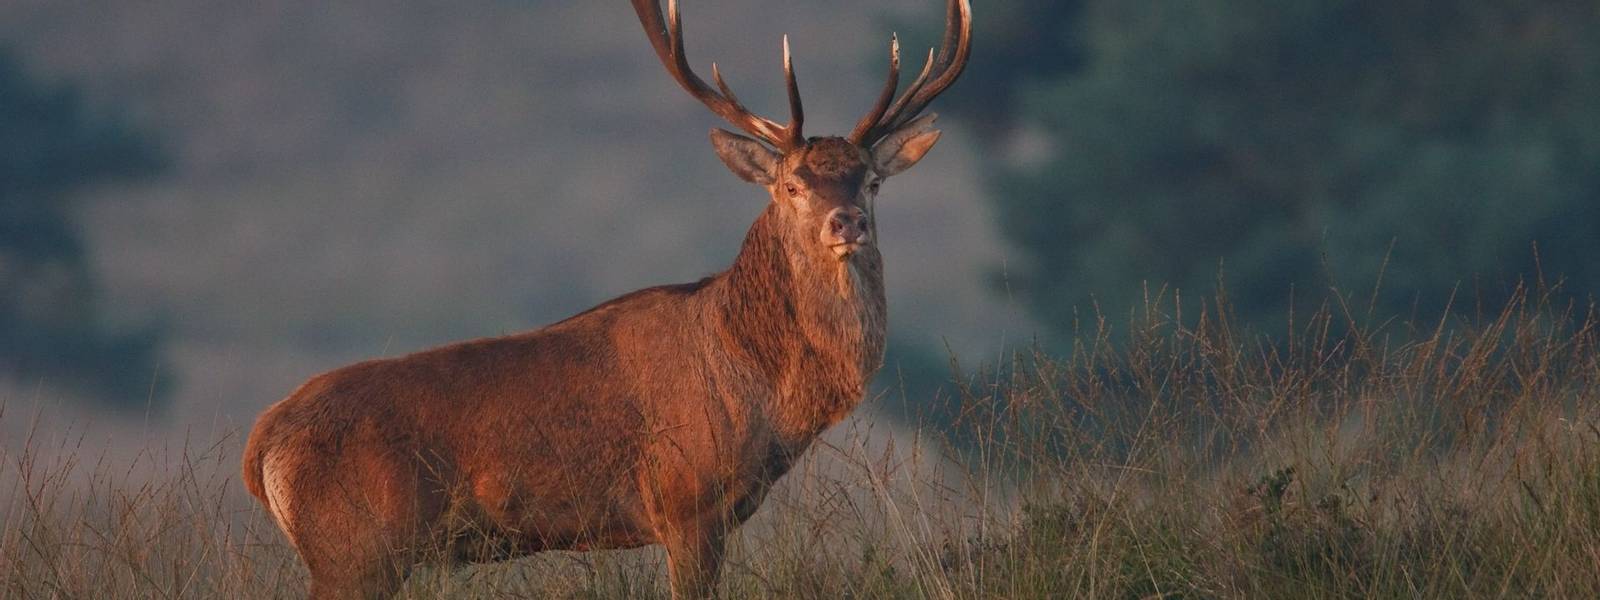 Wildlife - Red Deer - AdobeStock_42617181.jpeg